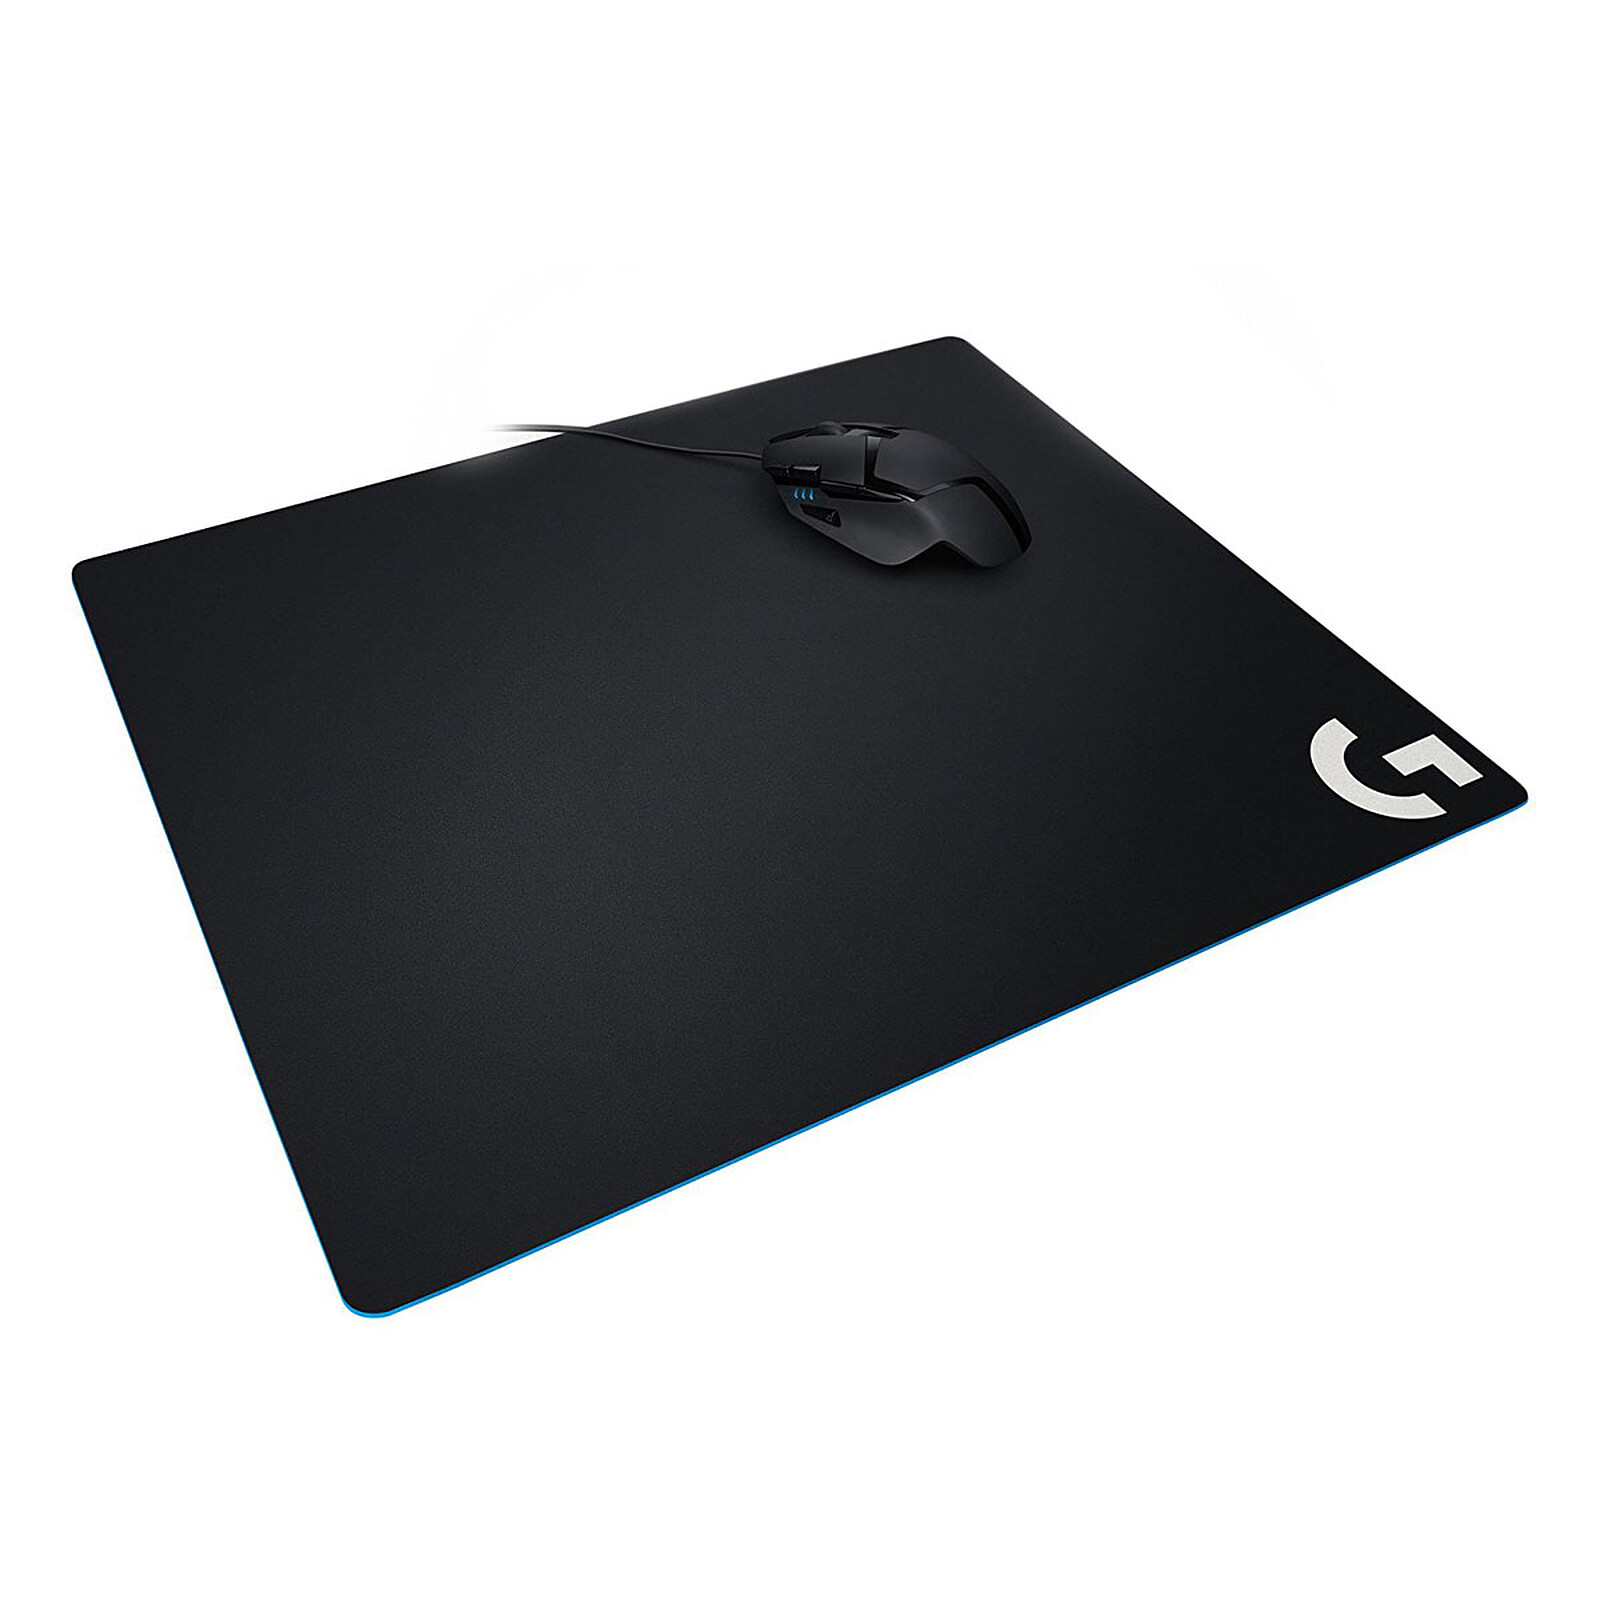 Logitech G640 Cloth Gaming Mouse Pad Tapis De Souris Logitech Sur Ldlc